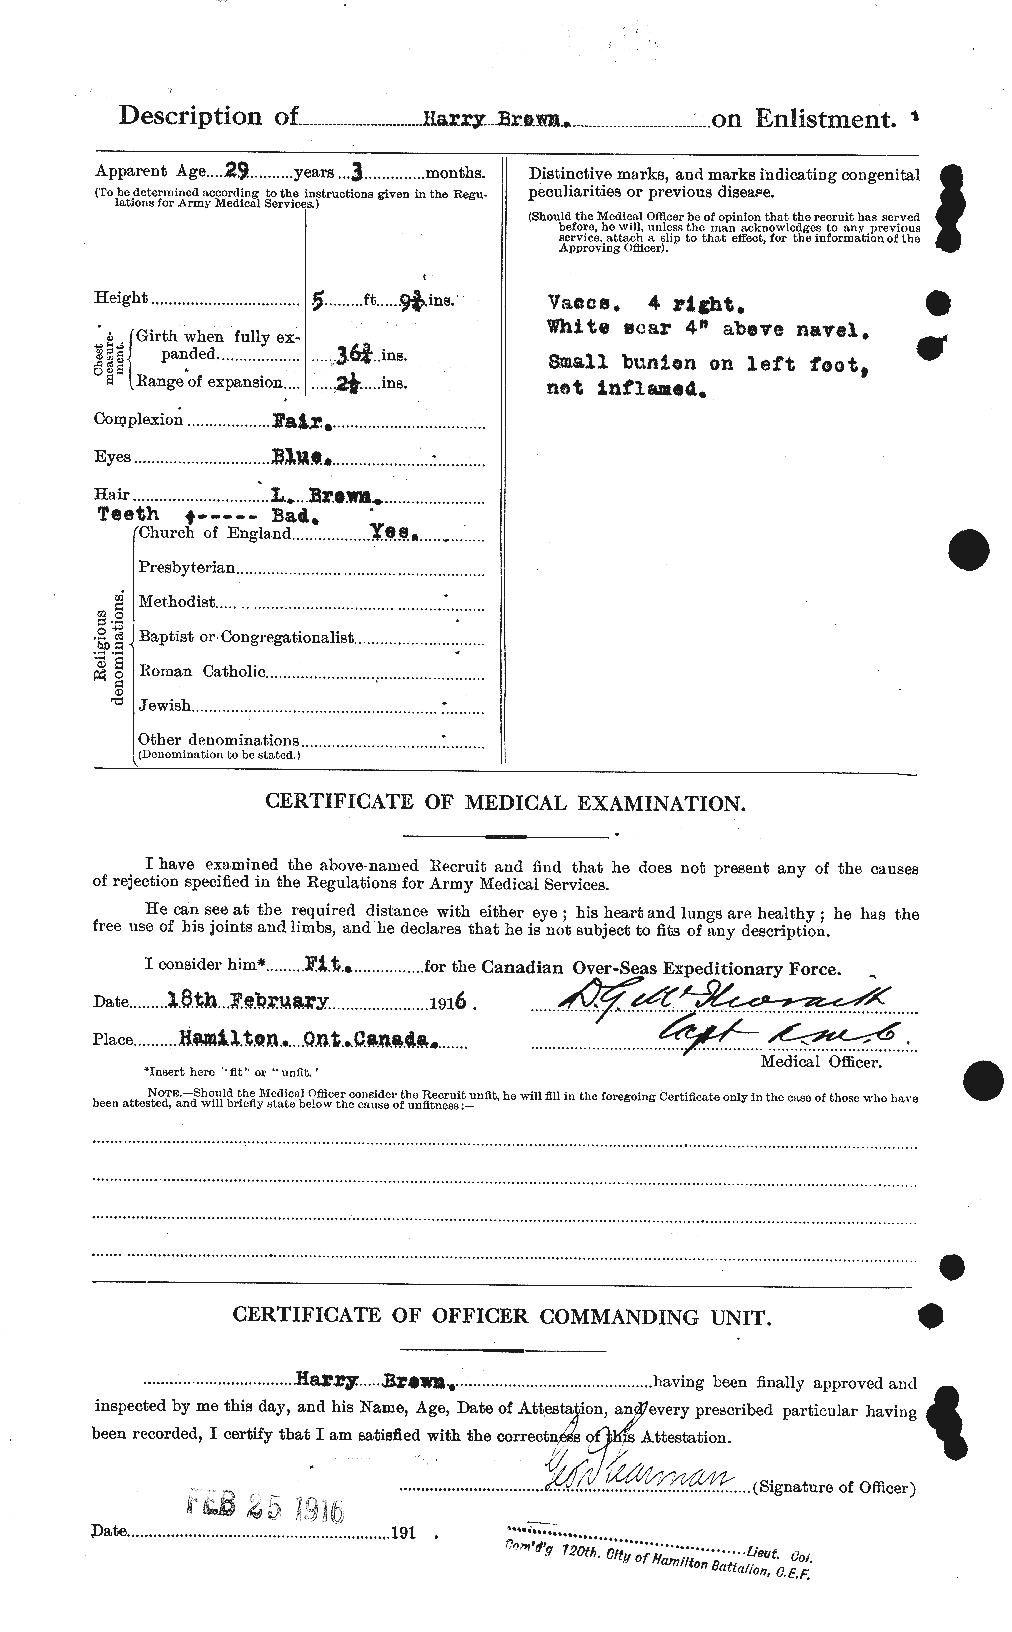 Dossiers du Personnel de la Première Guerre mondiale - CEC 265396b